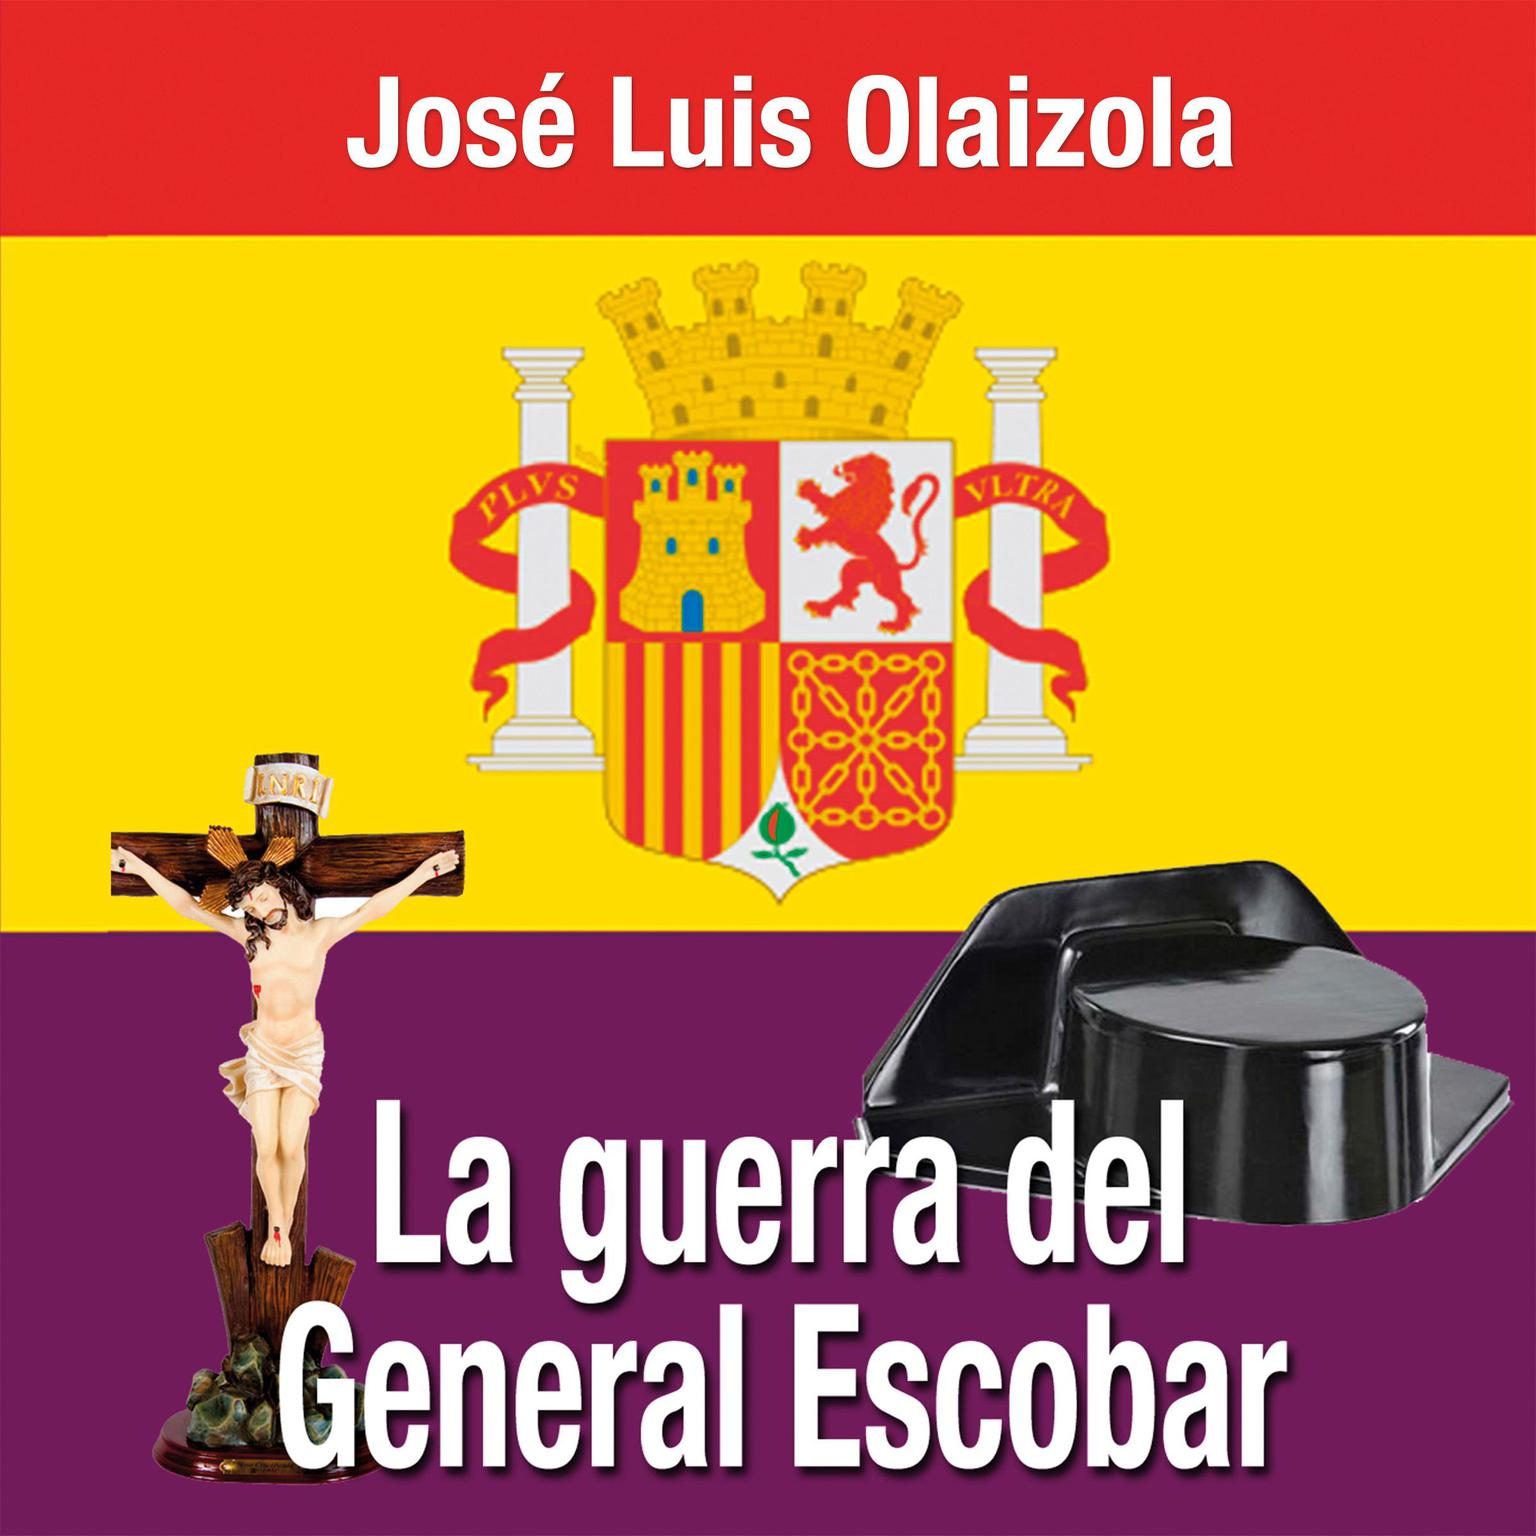 La guerra del General Escobar Audiobook, by José Luis Olaizola